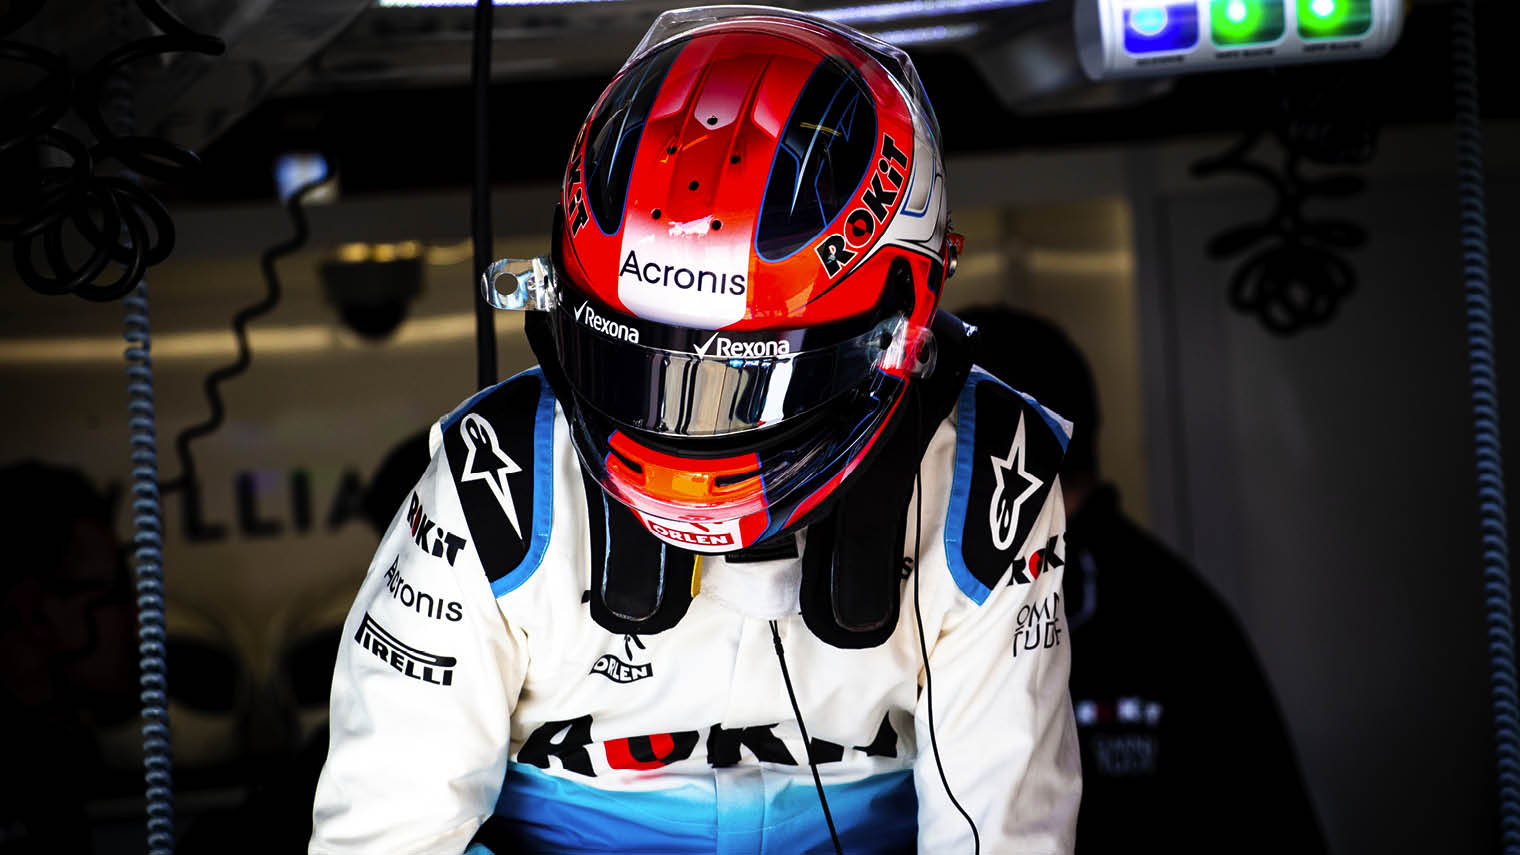 Q&A: Inside the tech set-up at ROKiT Williams Racing - Raconteur